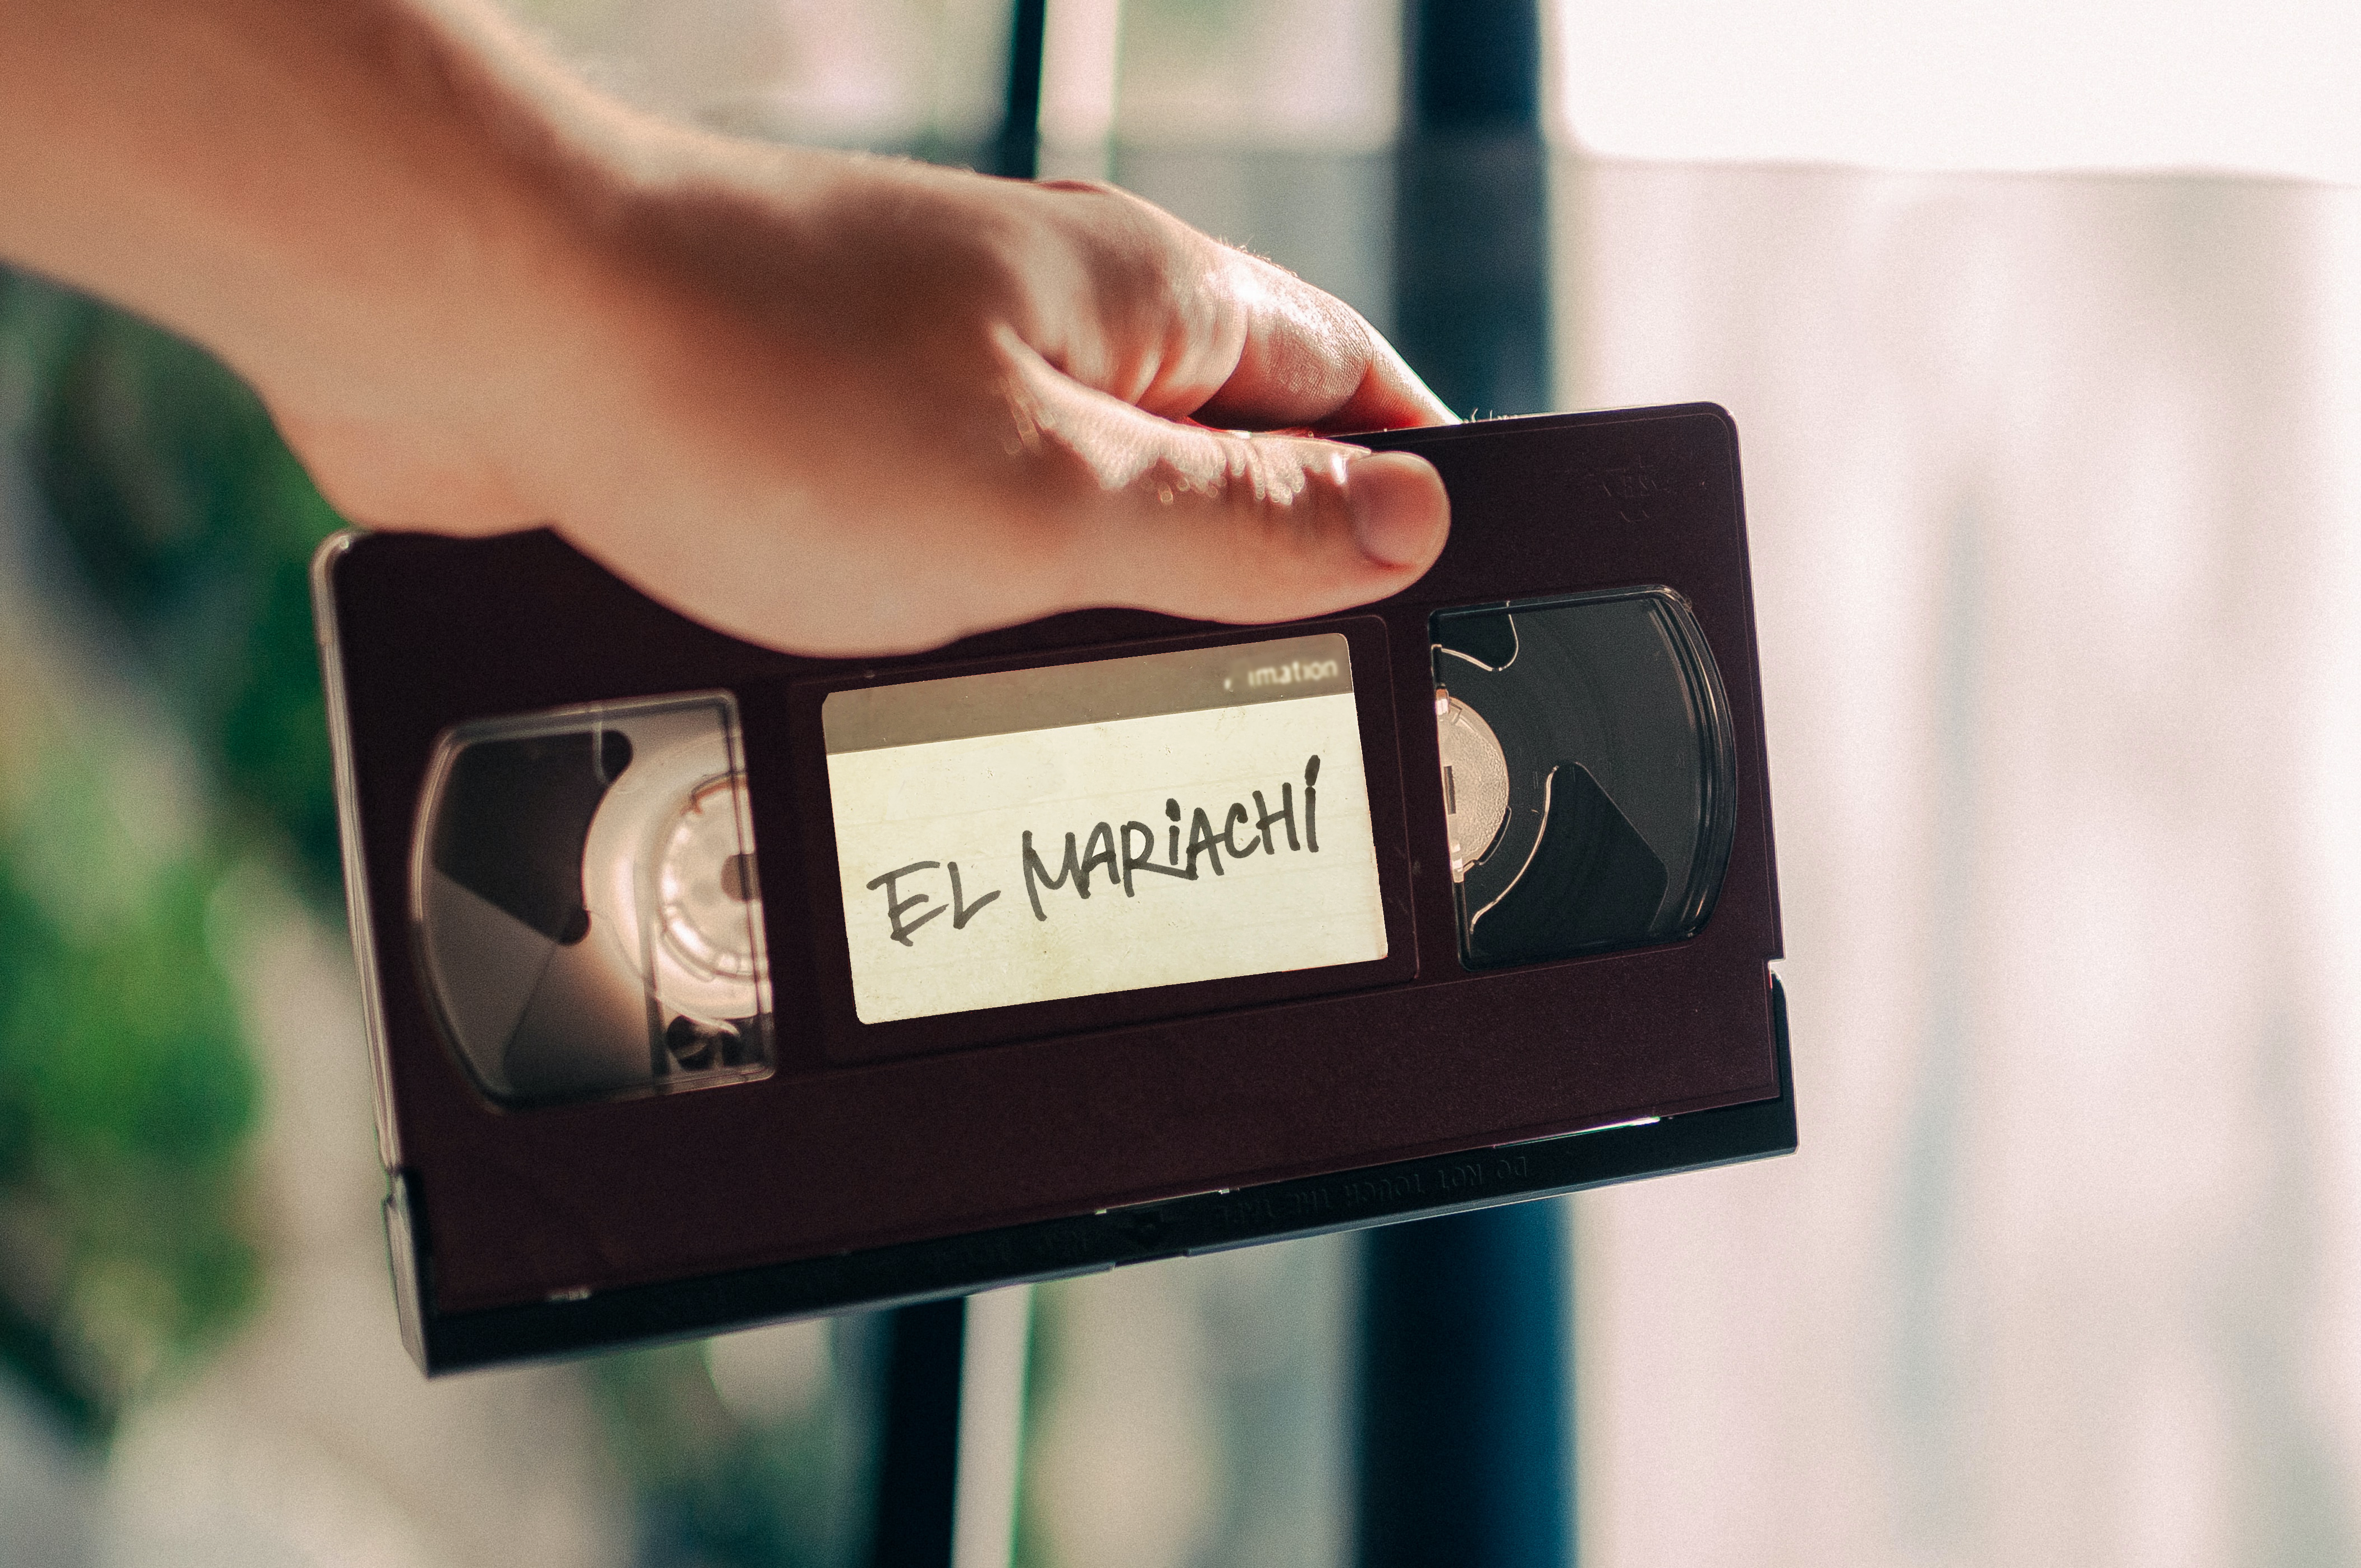 アニキが作った1本のホームビデオ 「エル・マリアッチ」（El Mariachi, 1992）